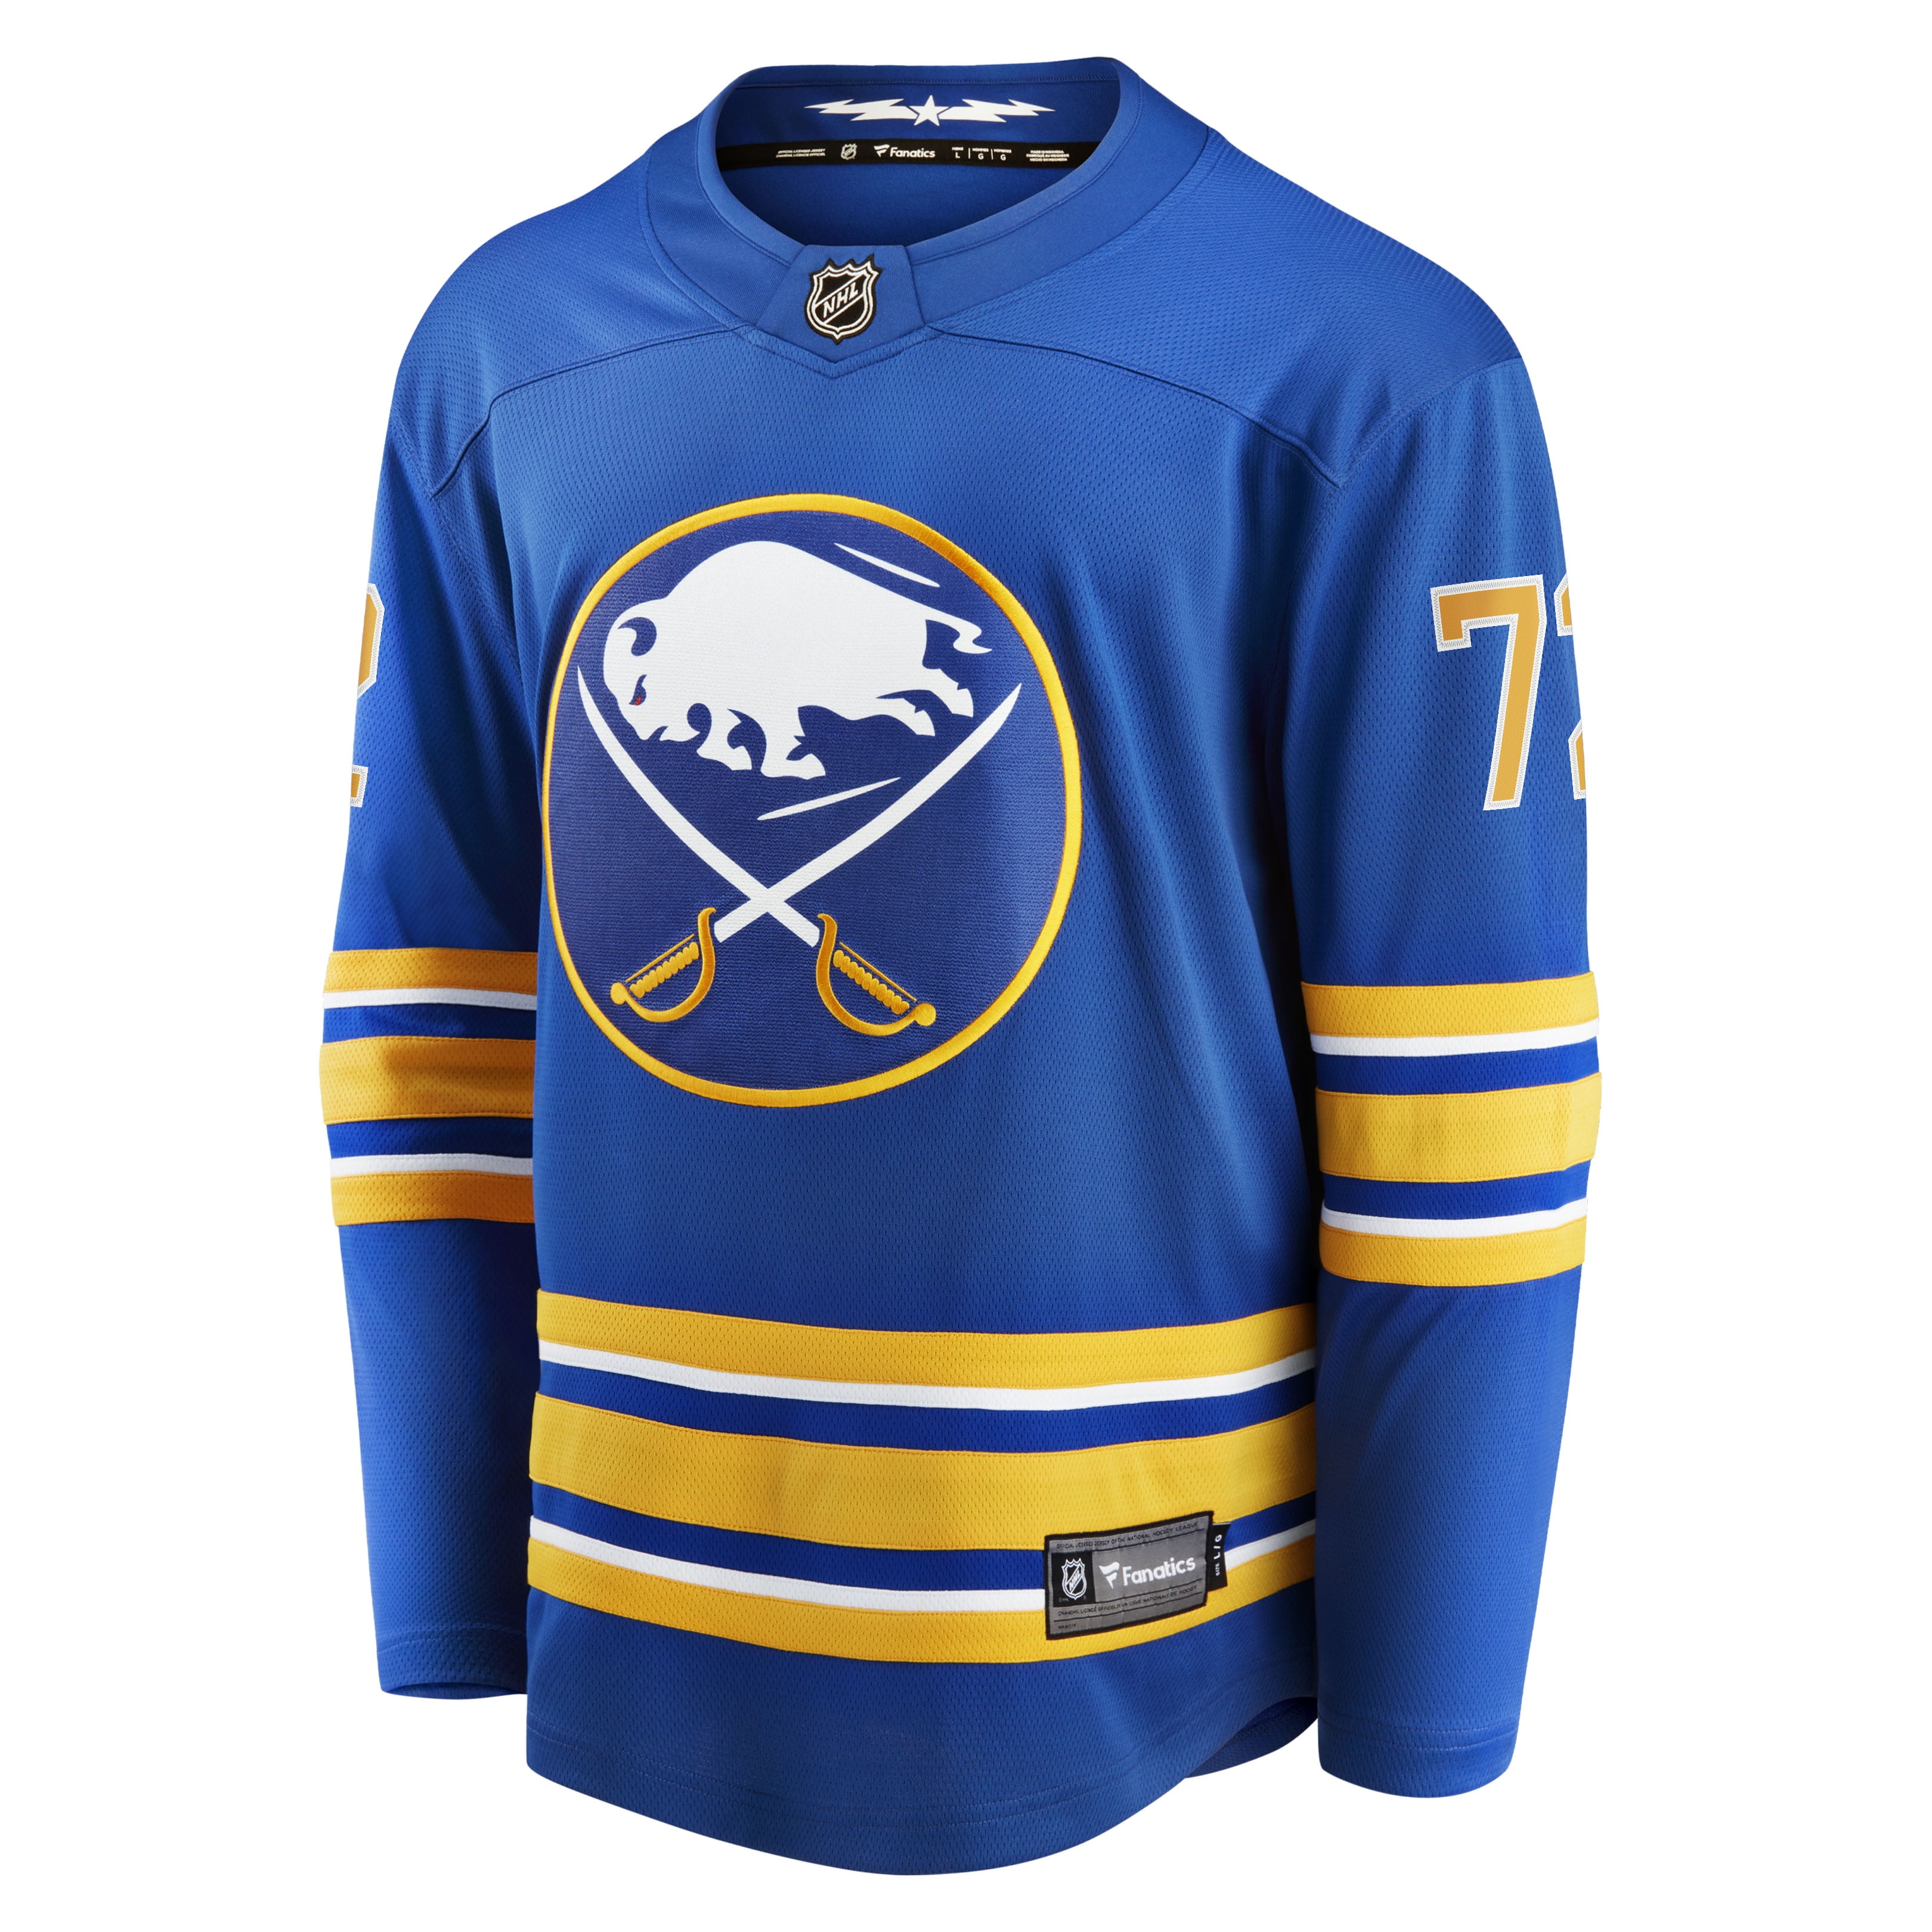 CozyandRych Tage Thompson T-Shirt, Buffalo Sabres Shirt, Buffalo Hockey Shirt, 2022 Buffalo Shirt, Tage Tee 72 - Unisex Blue or Navy